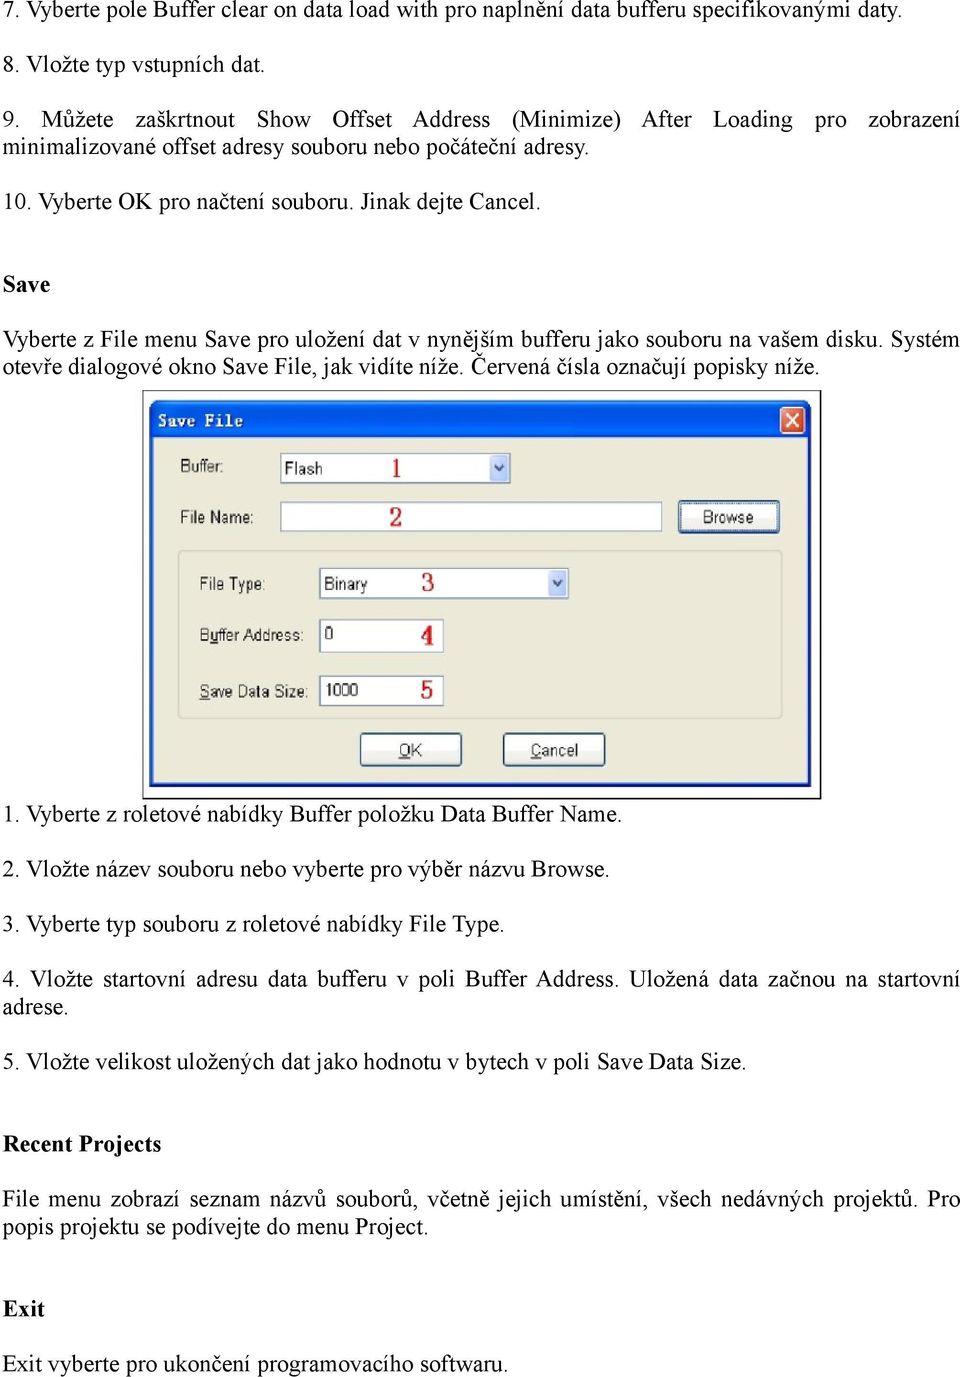 Save Vyberte z File menu Save pro uložení dat v nynějším bufferu jako souboru na vašem disku. Systém otevře dialogové okno Save File, jak vidíte níže. Červená čísla označují popisky níže. 1.